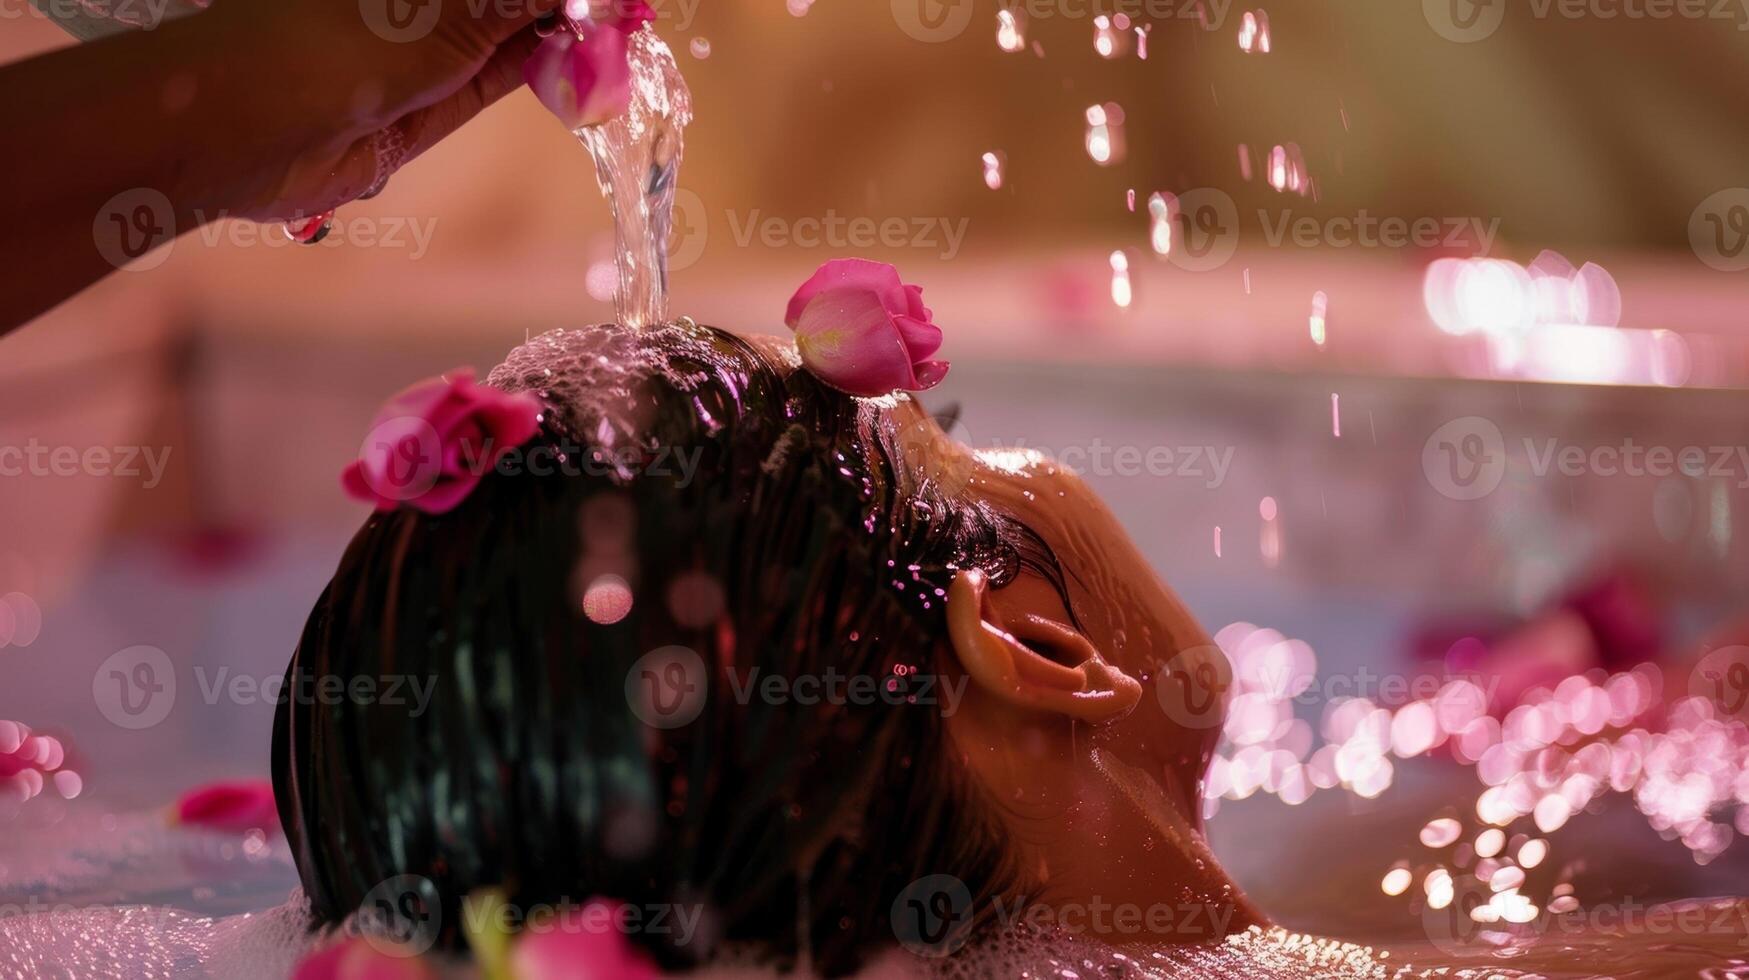 un persona torrencial agua de rosas terminado su pelo mientras en el sauna utilizando el calor a infundir el Rosa olor y dejando su pelo brillante y suave. foto